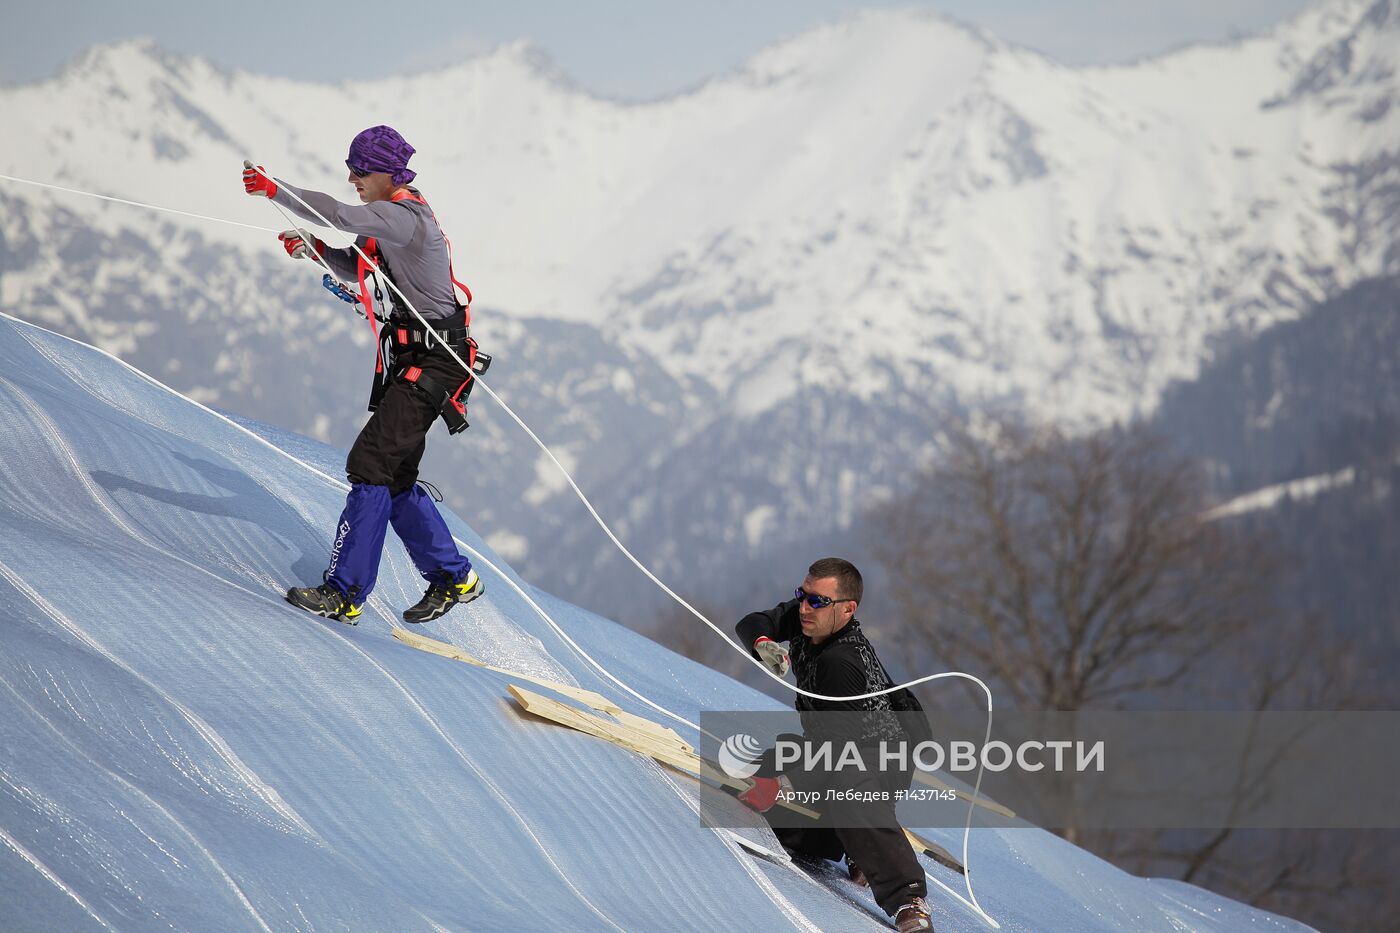 Консервация снега на склонах "Роза Хутор" к Олимпиаде в Сочи